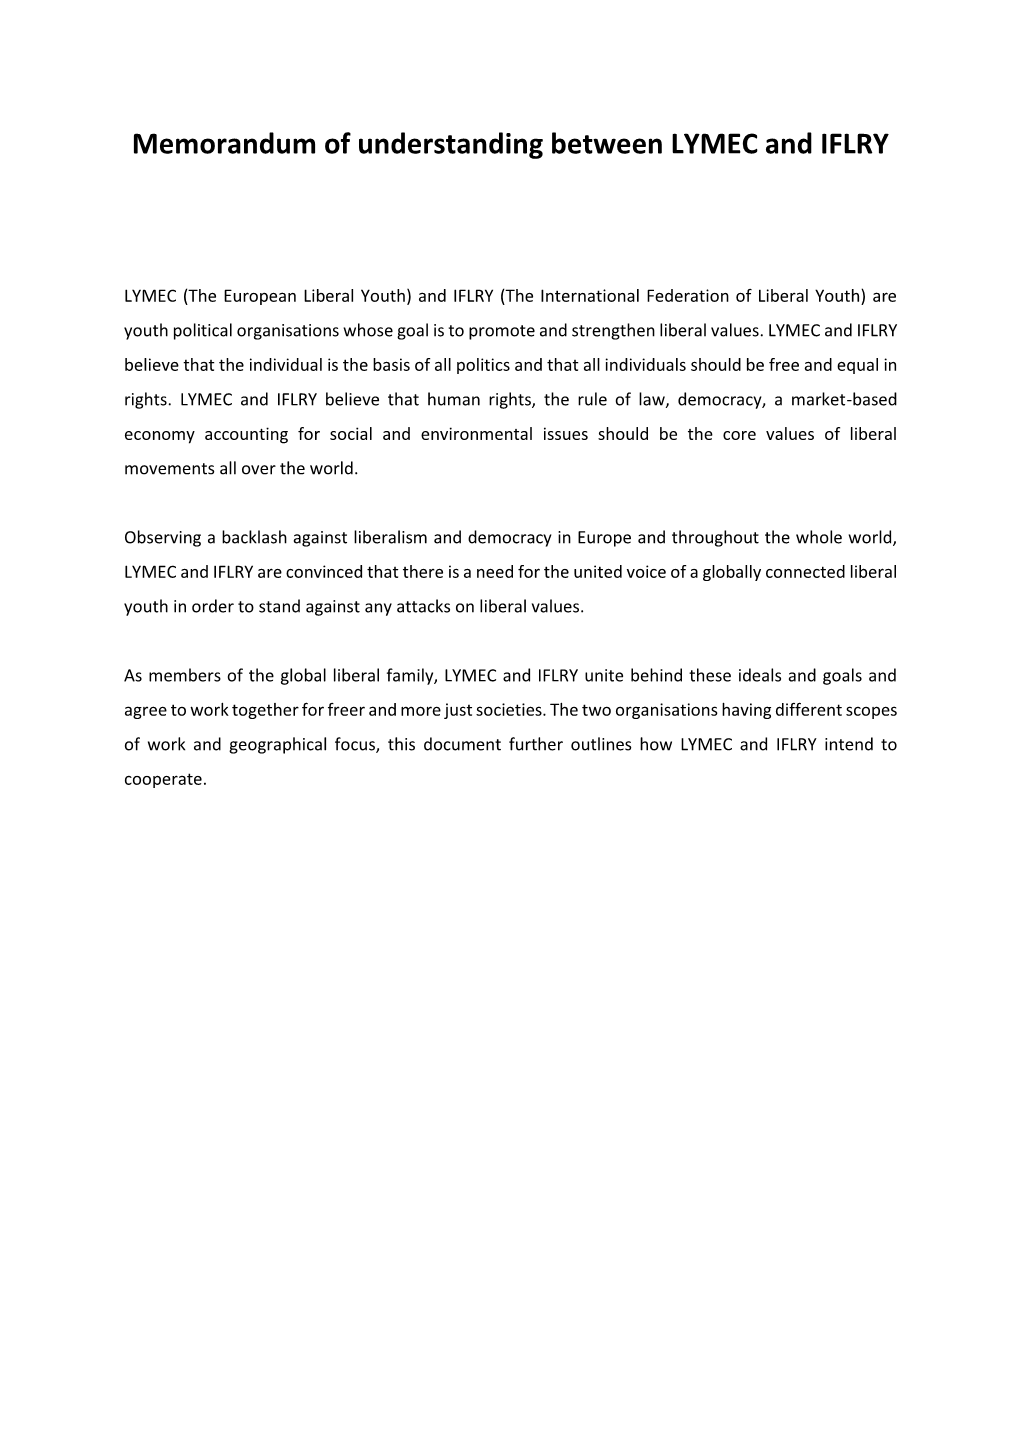 Memorandum of Understanding Between LYMEC and IFLRY